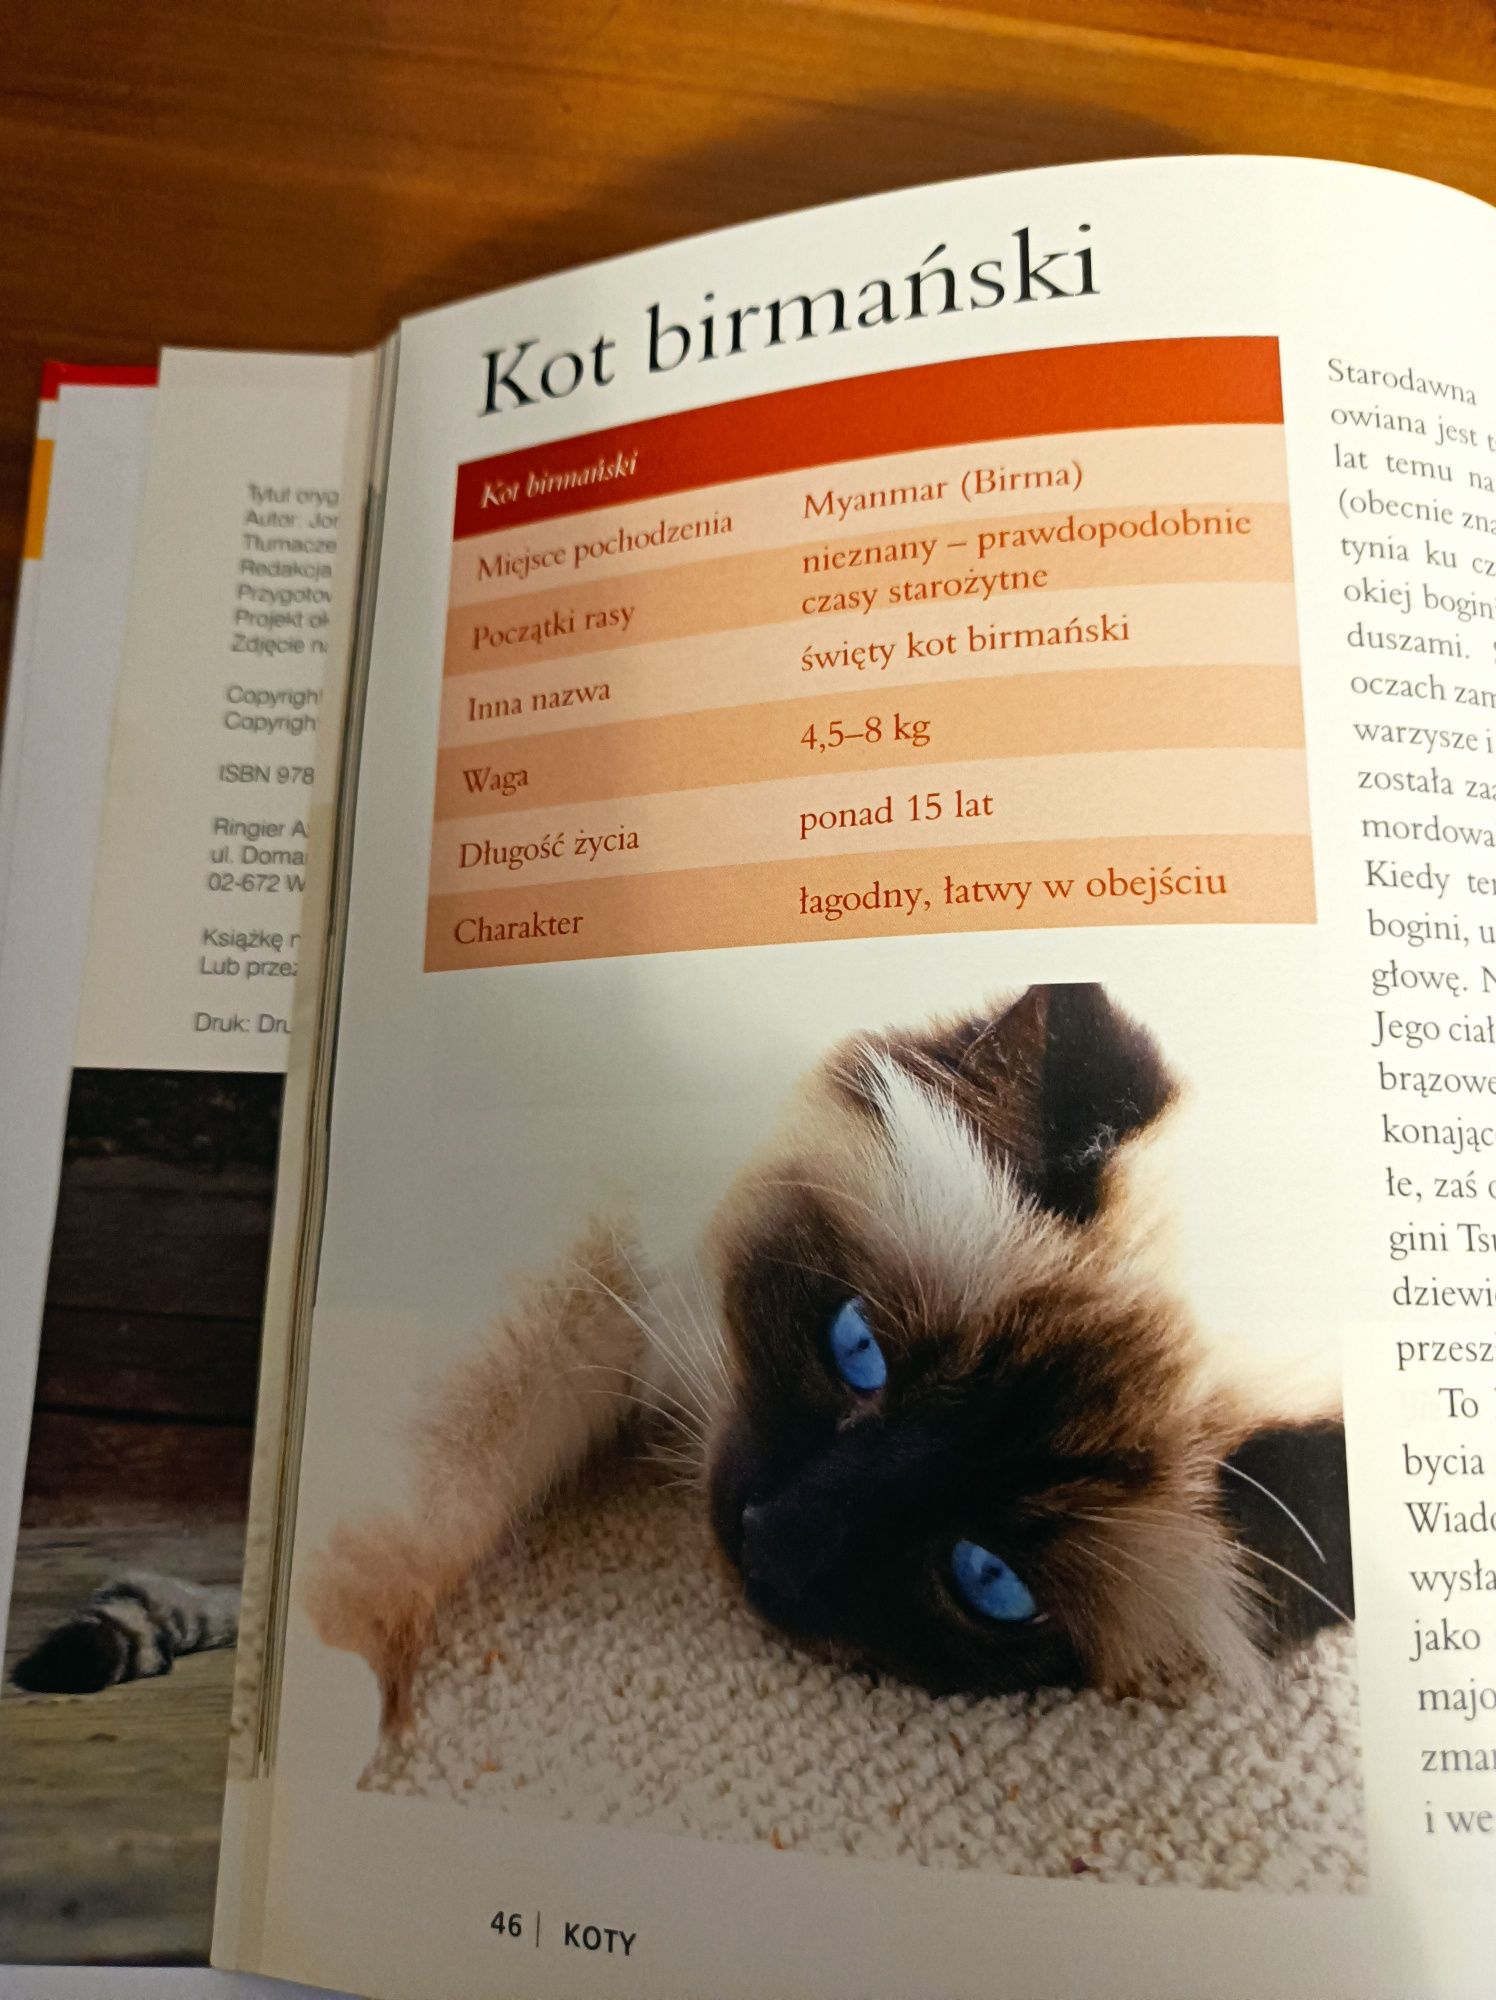 Książka o kotach